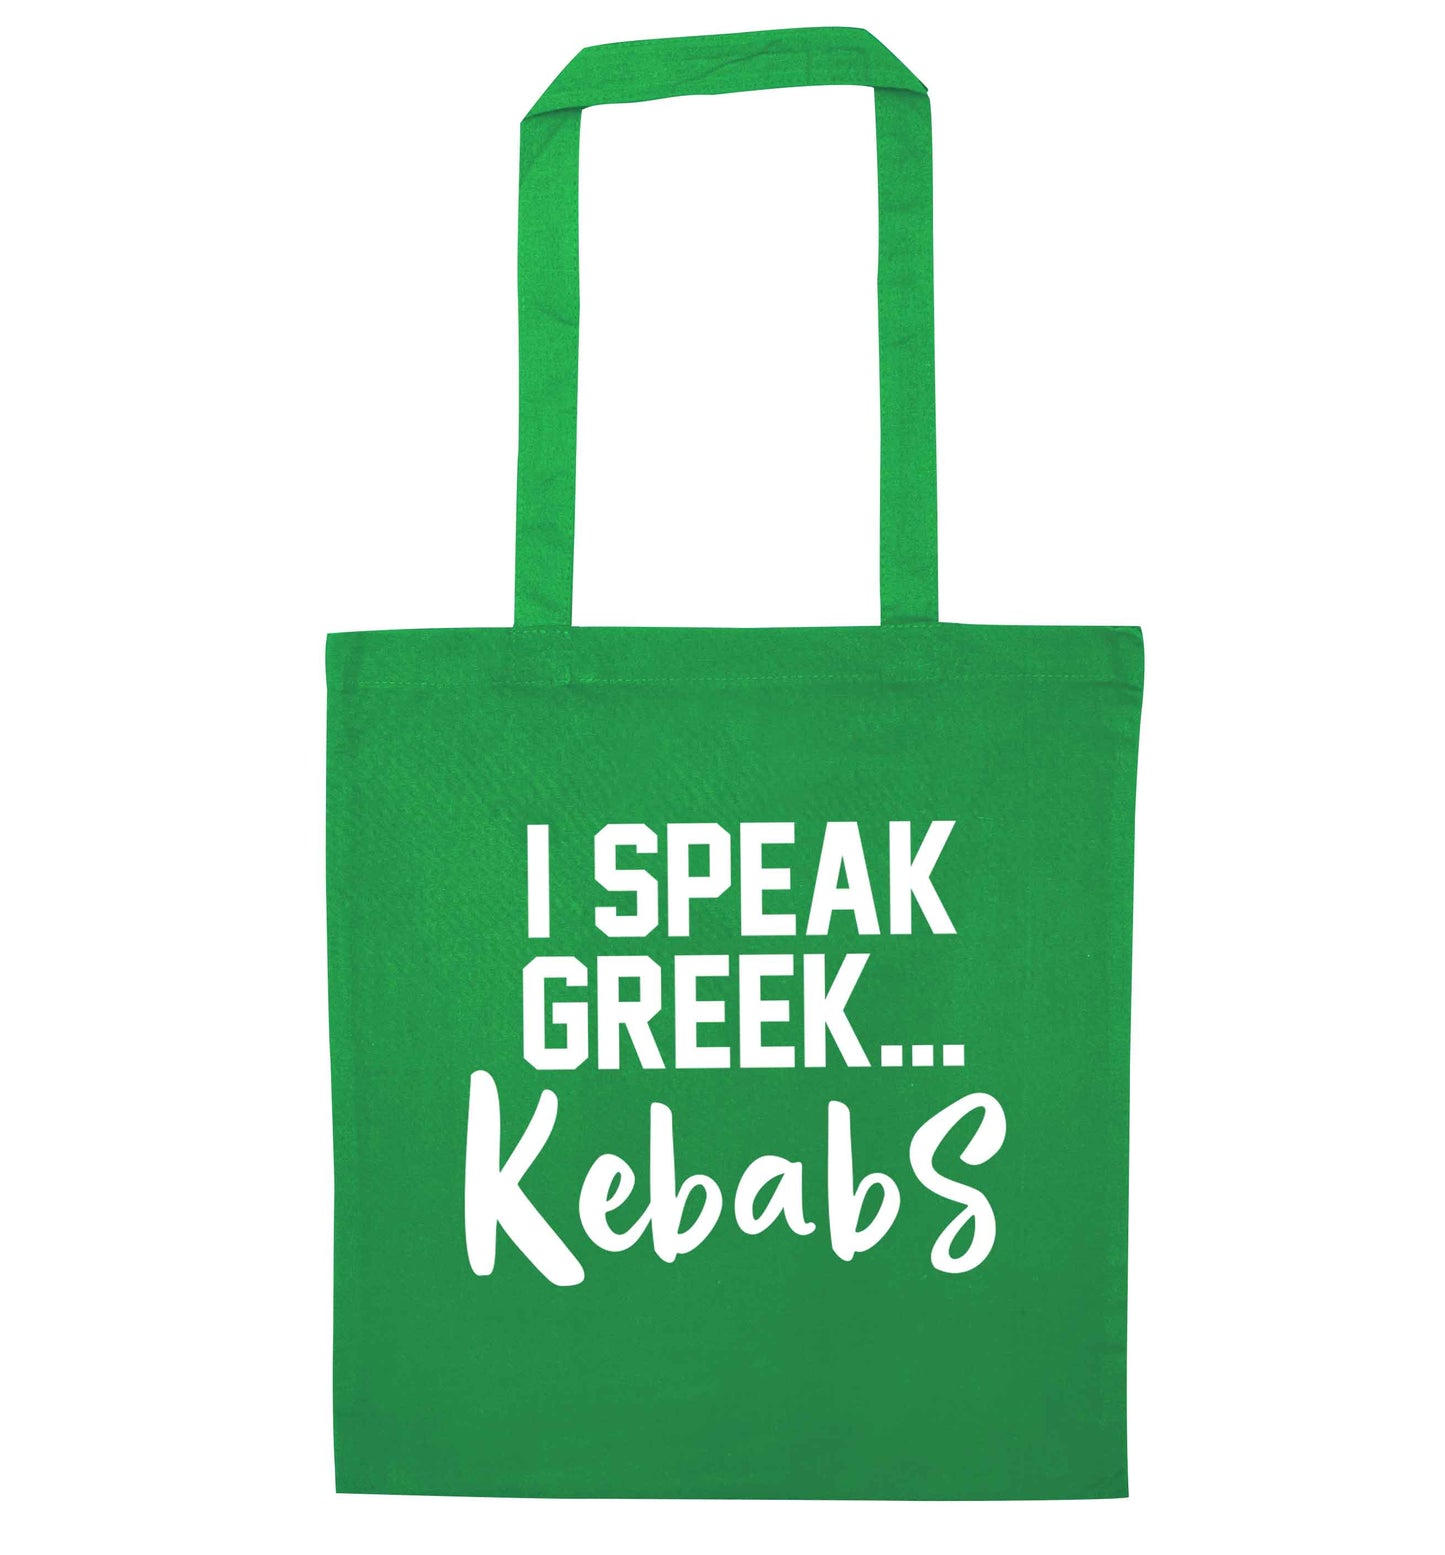 I speak Greek...kebabs green tote bag